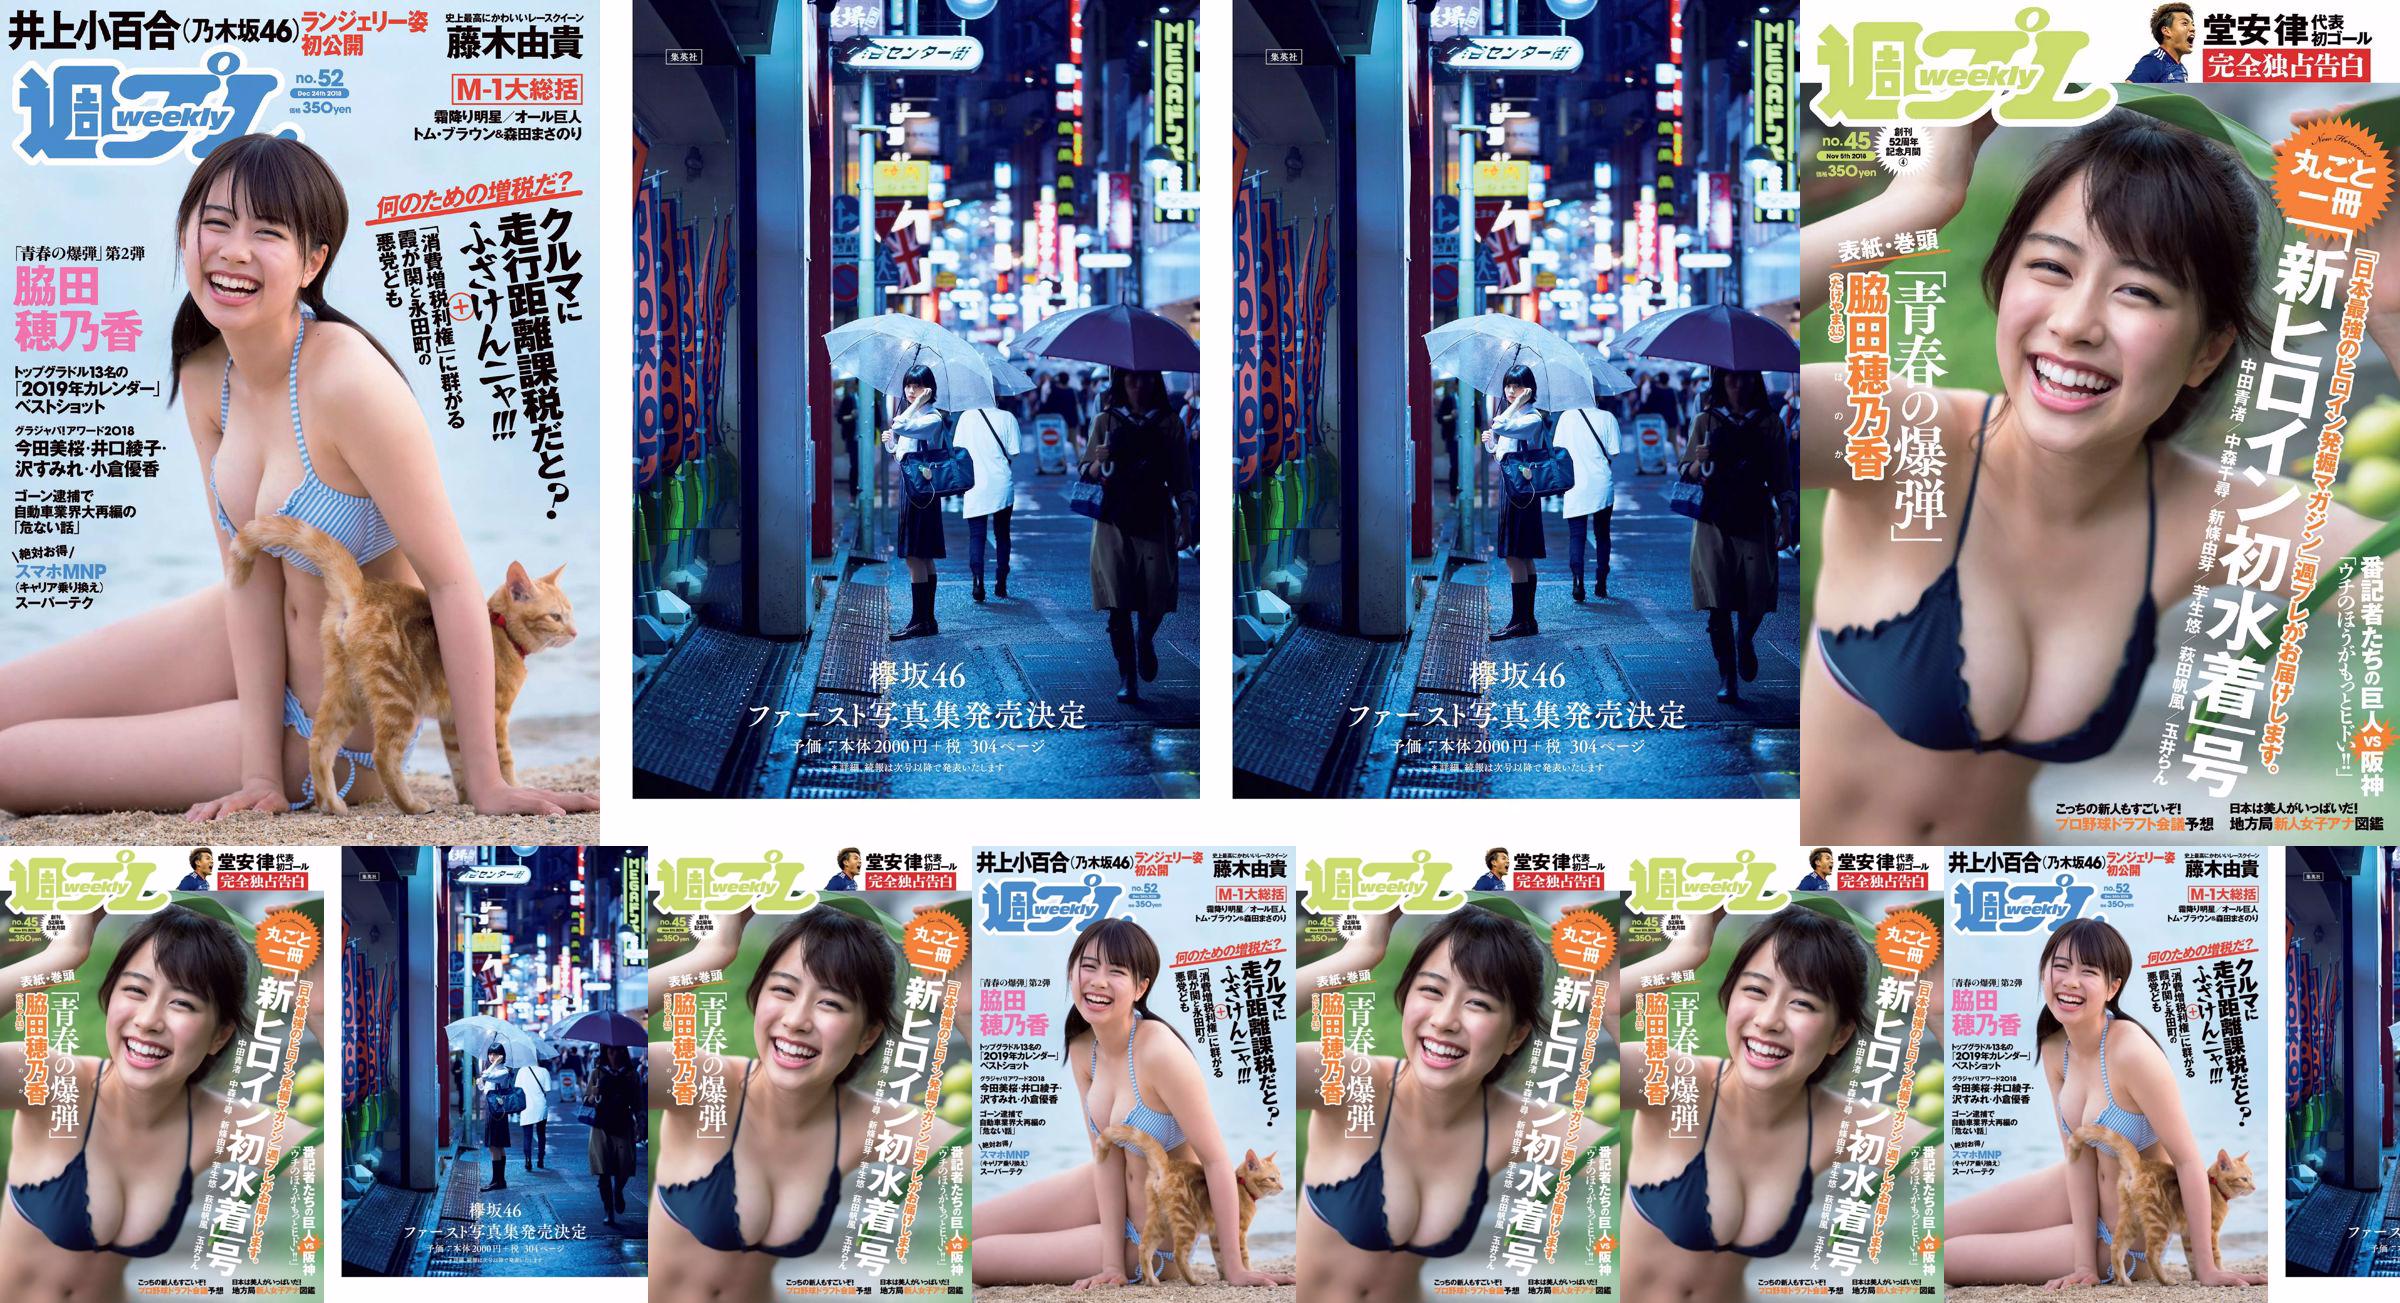 Honoka Hagita Seina Nakata Chihiro Nakamori Yume Shinjo Yuu Imou Honoka Hagita Ran Tamai [Playboy Semanal] 2018 Foto No.45 No.041c93 Página 5